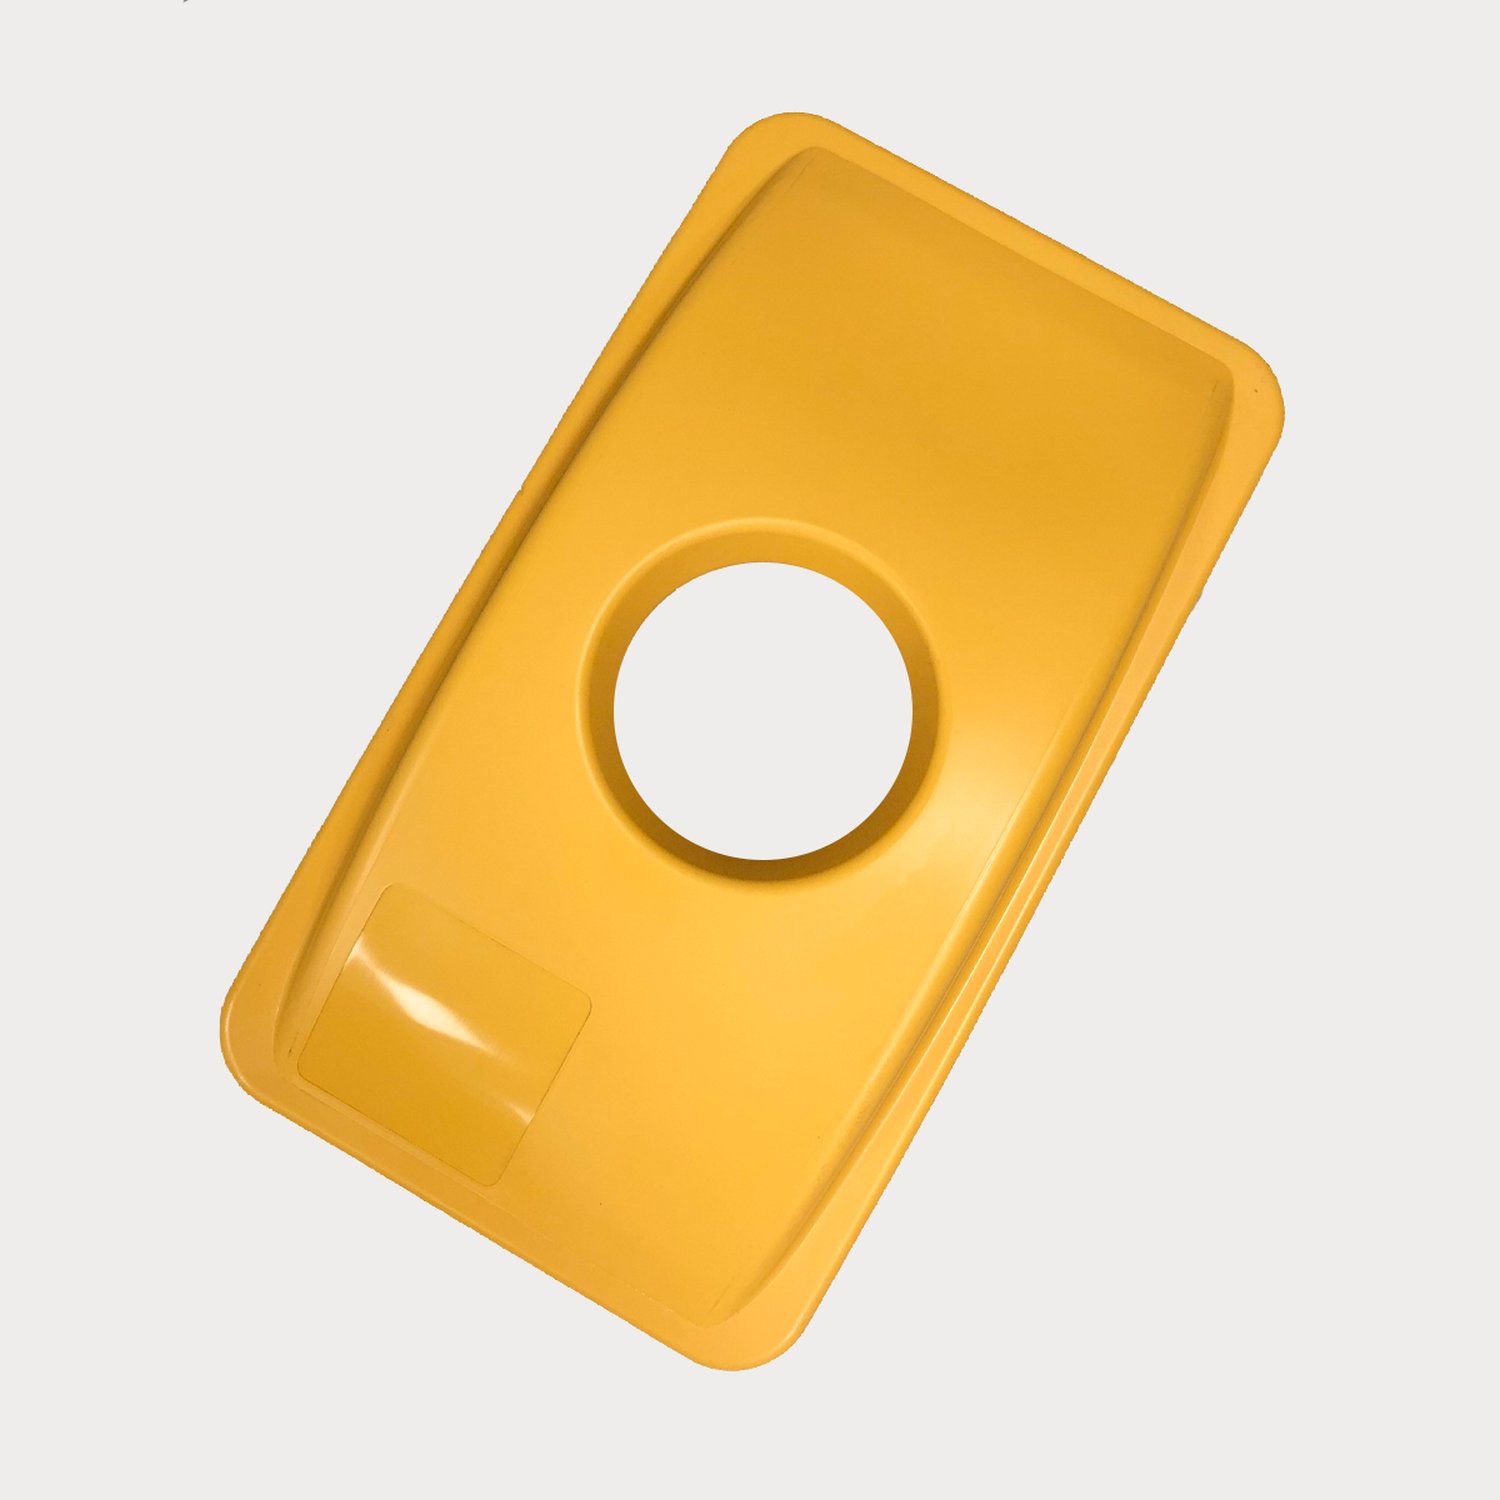 WWLID-CIR-1037 Accessoires  Accessoires Waste Watcher :
Pour égayer les poubelles et indiquer clairement le type de déchets à y déposer, nous disposons d'accessoires assortis. Par exemple, un couvercle bleu pour le papier, un couvercle jaune pour le plastique et un couvercle noir pour les déchets résiduels. Vous pouvez également attacher les bacs les uns aux autres avec un connecteur. Grâce aux panneaux d’informations et autocollants, on distingue facilement quels déchets sont destinés à quel conteneur.